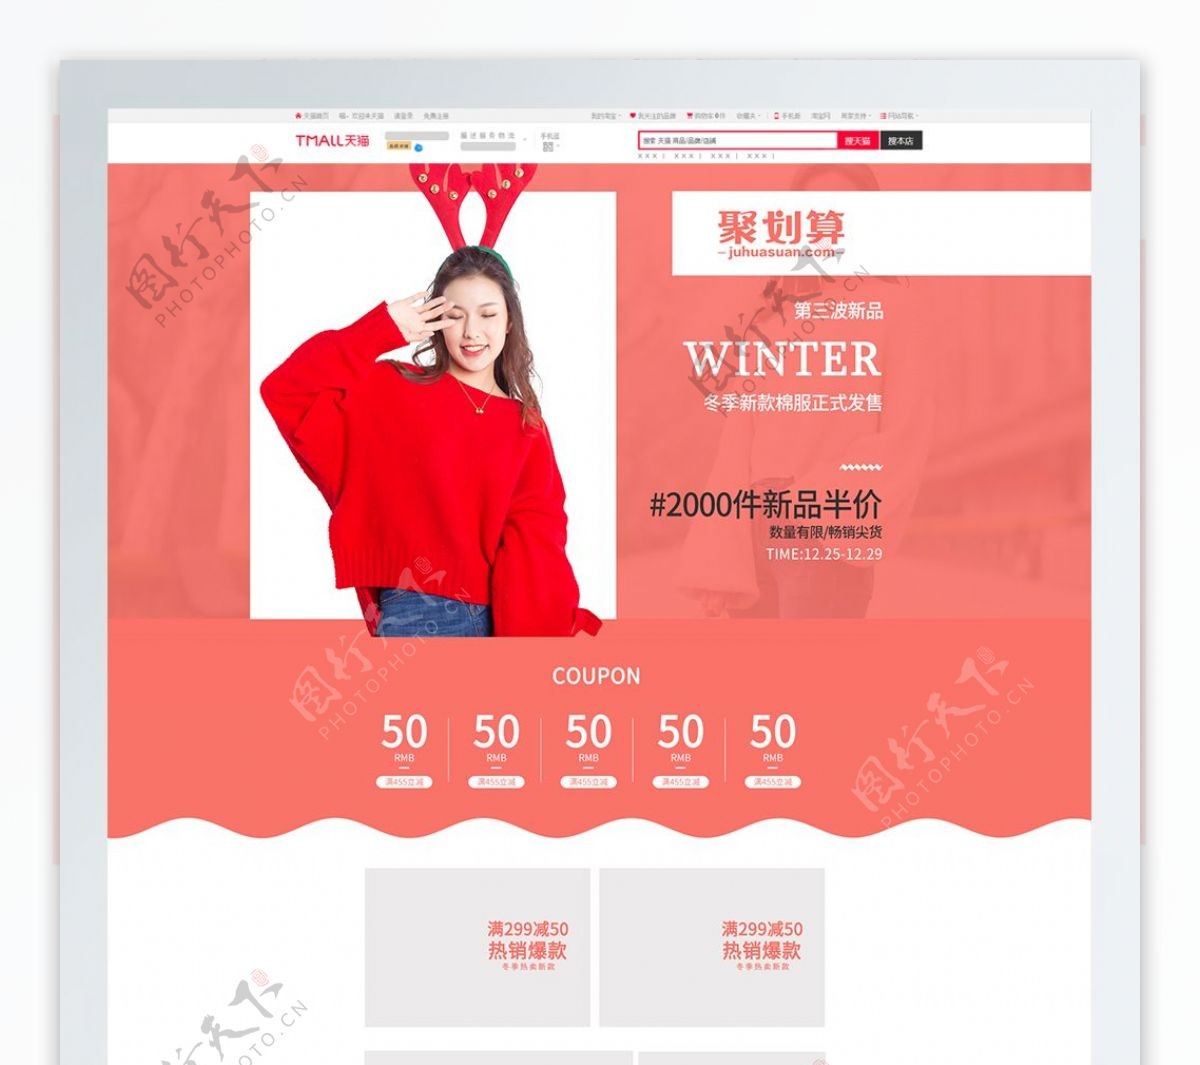 流行珊瑚红棉服冬装女装简约促销PC模板